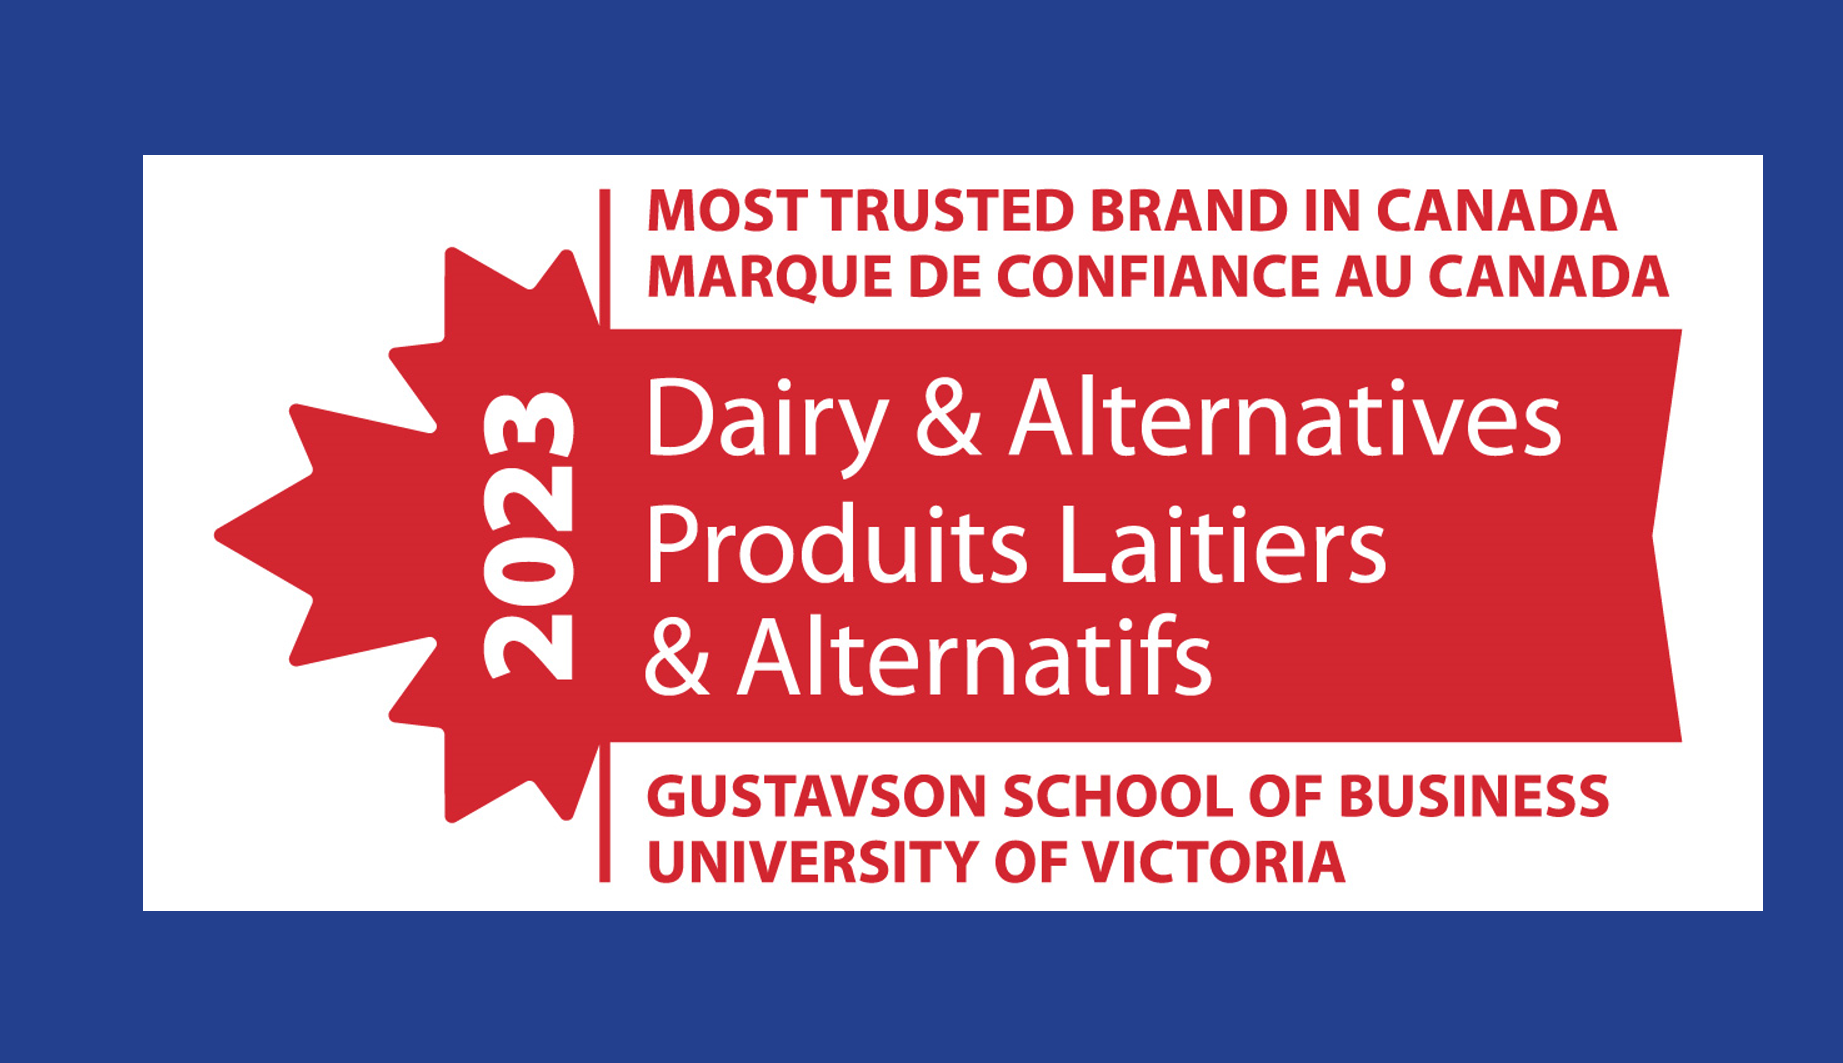 Lactalis Canada reconnue comme l’une des marques les plus dignes de confiance au Canada et le chef de file de l’industrie laitière selon  l’Indice Gustavson Brand Trust Index 2023